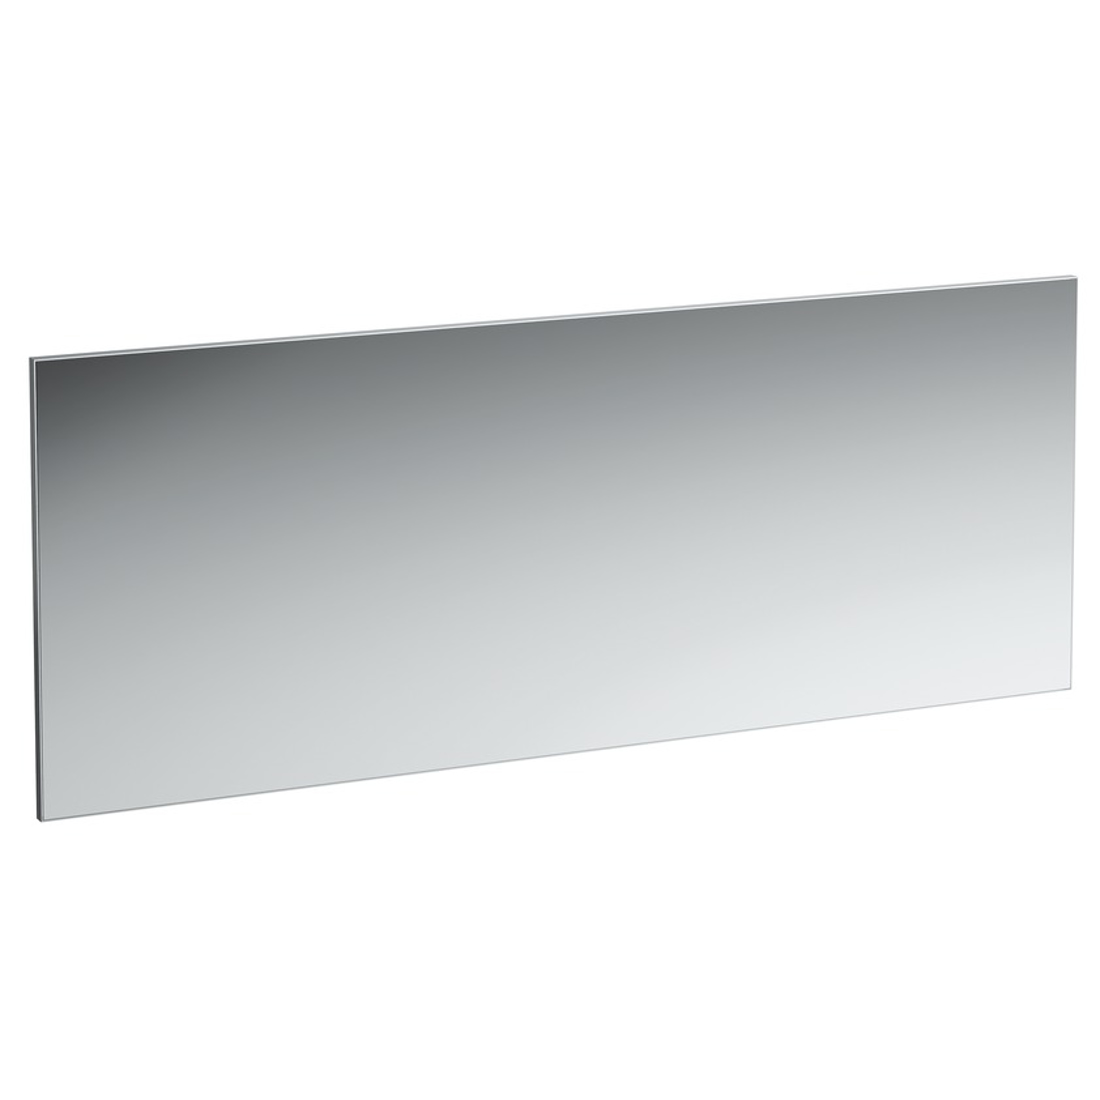 Slika od FRAME 25 ogledalo sa aluminijumskim okvirom